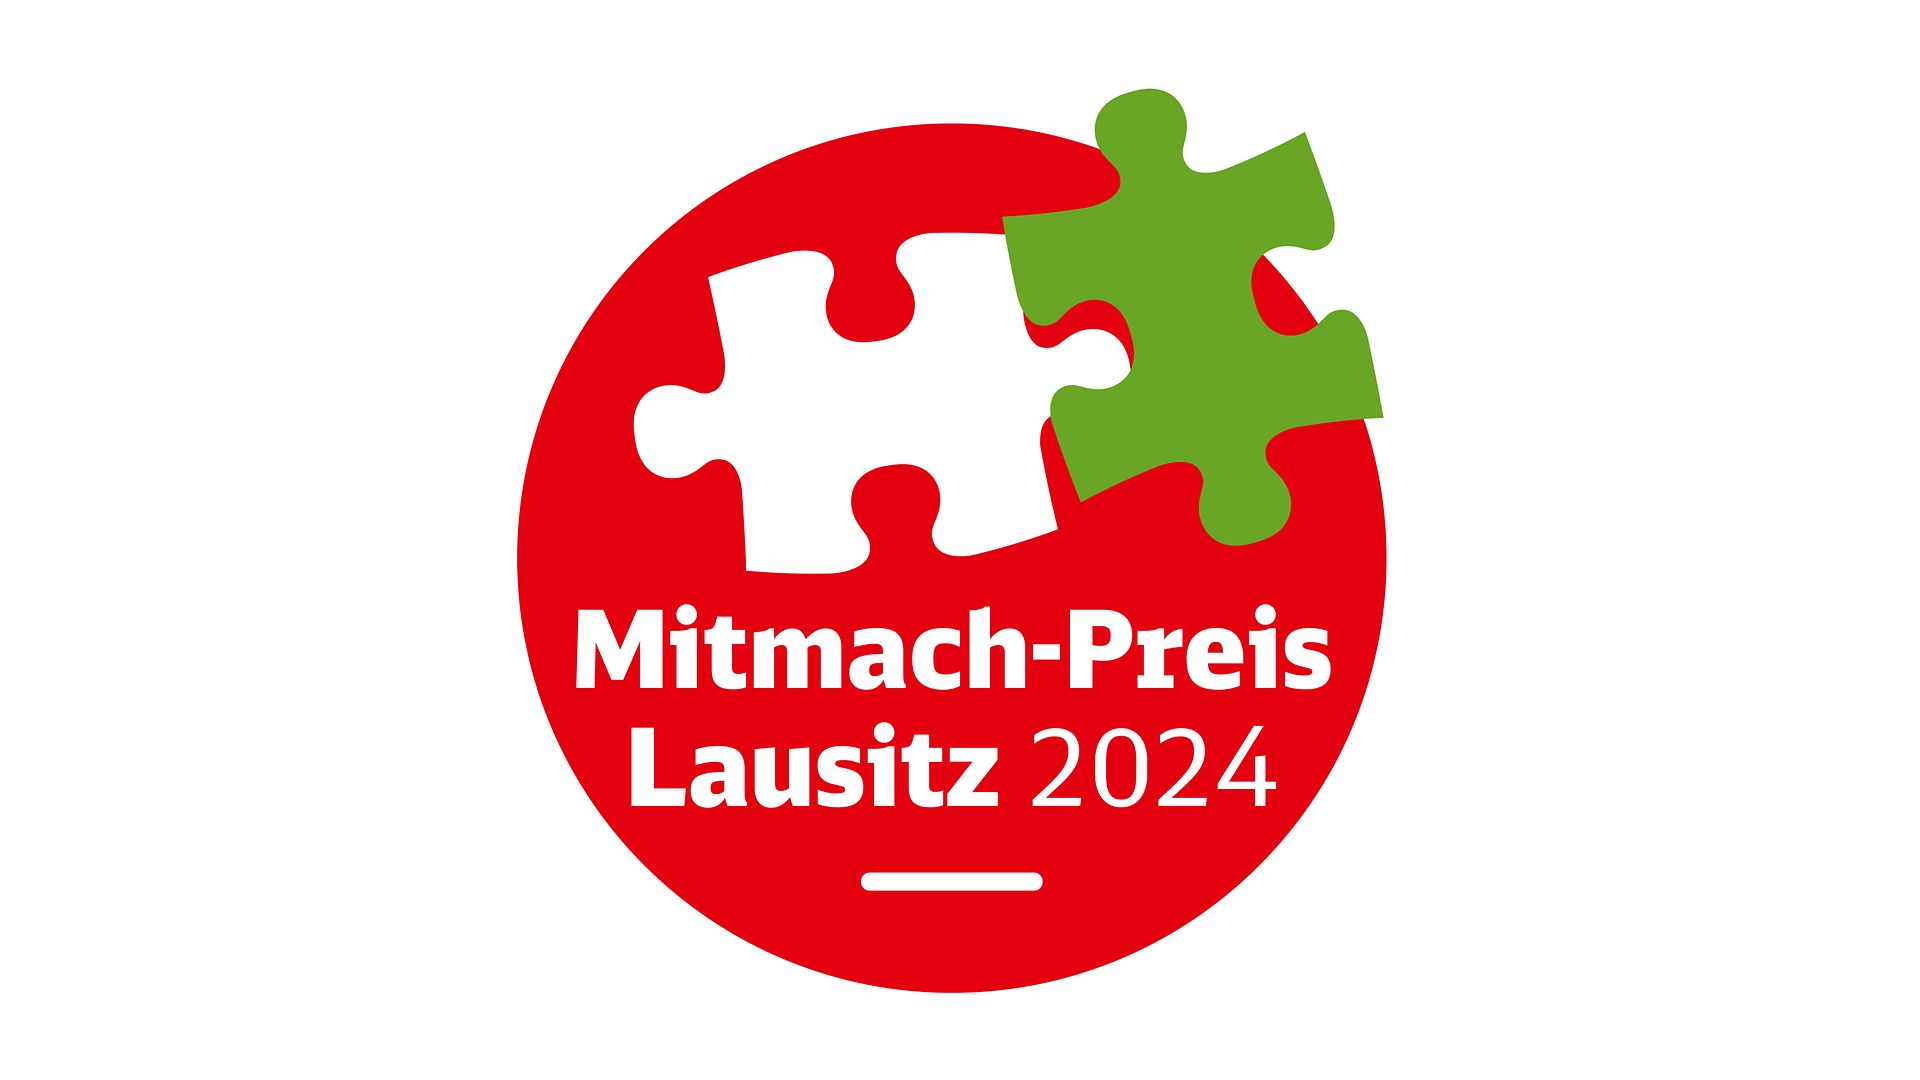 Logo für den Mitmachpreis 2024: zwei Puzzle-Teile auf einem roten Kreis